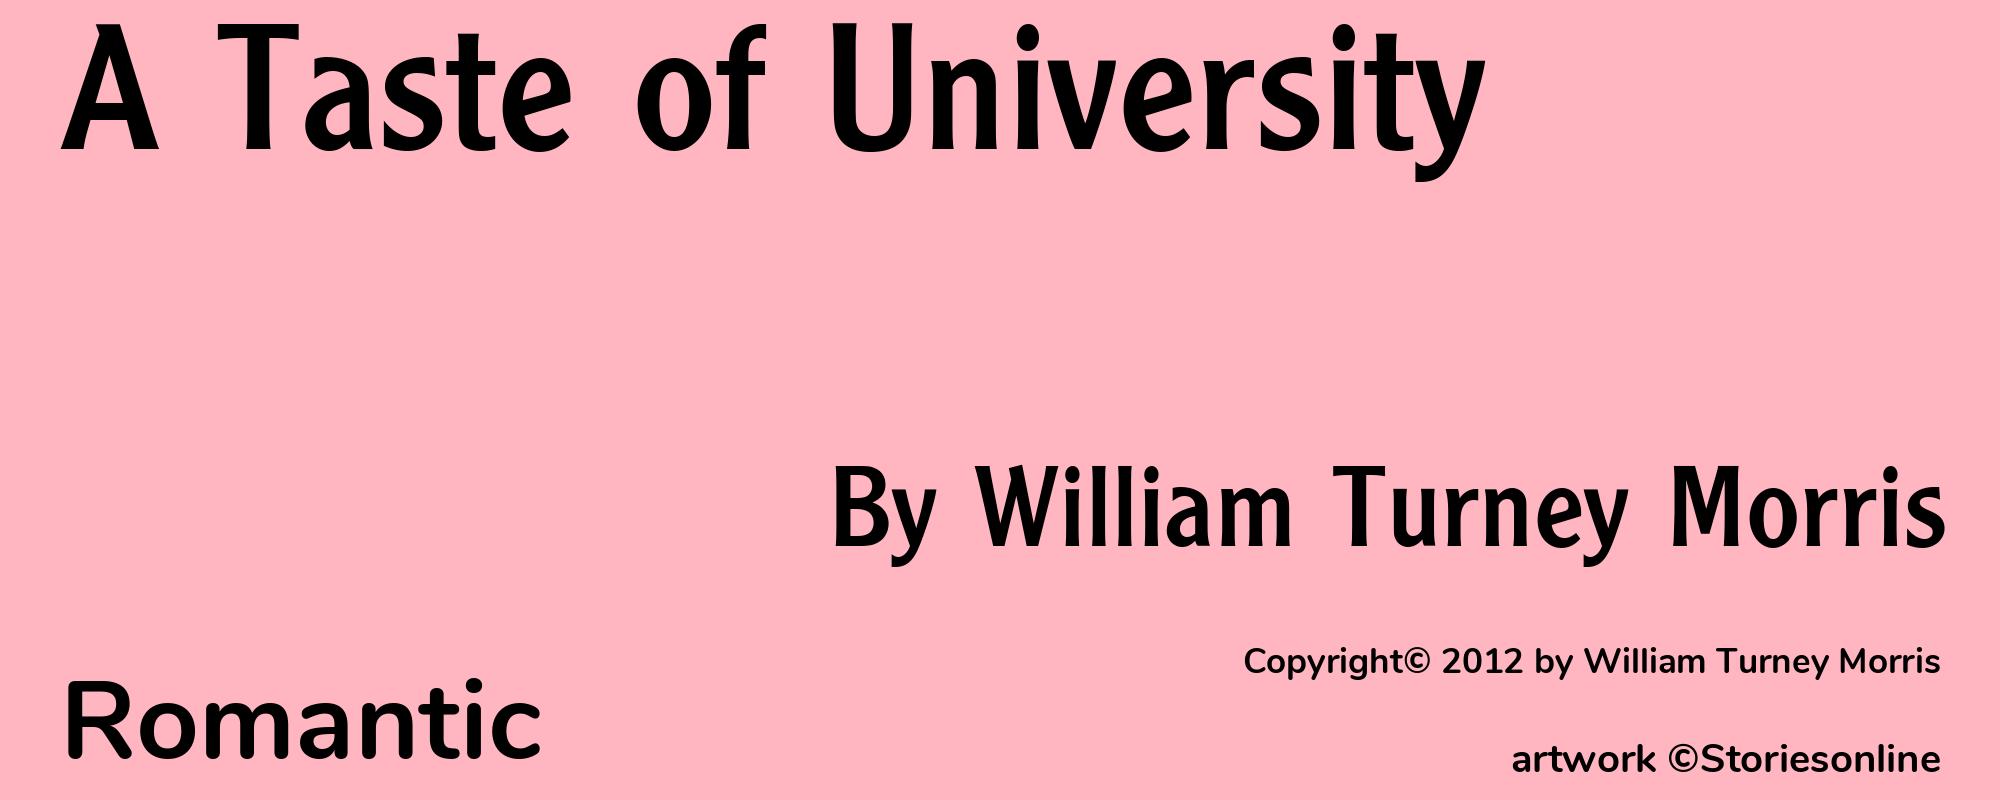 A Taste of University - Cover